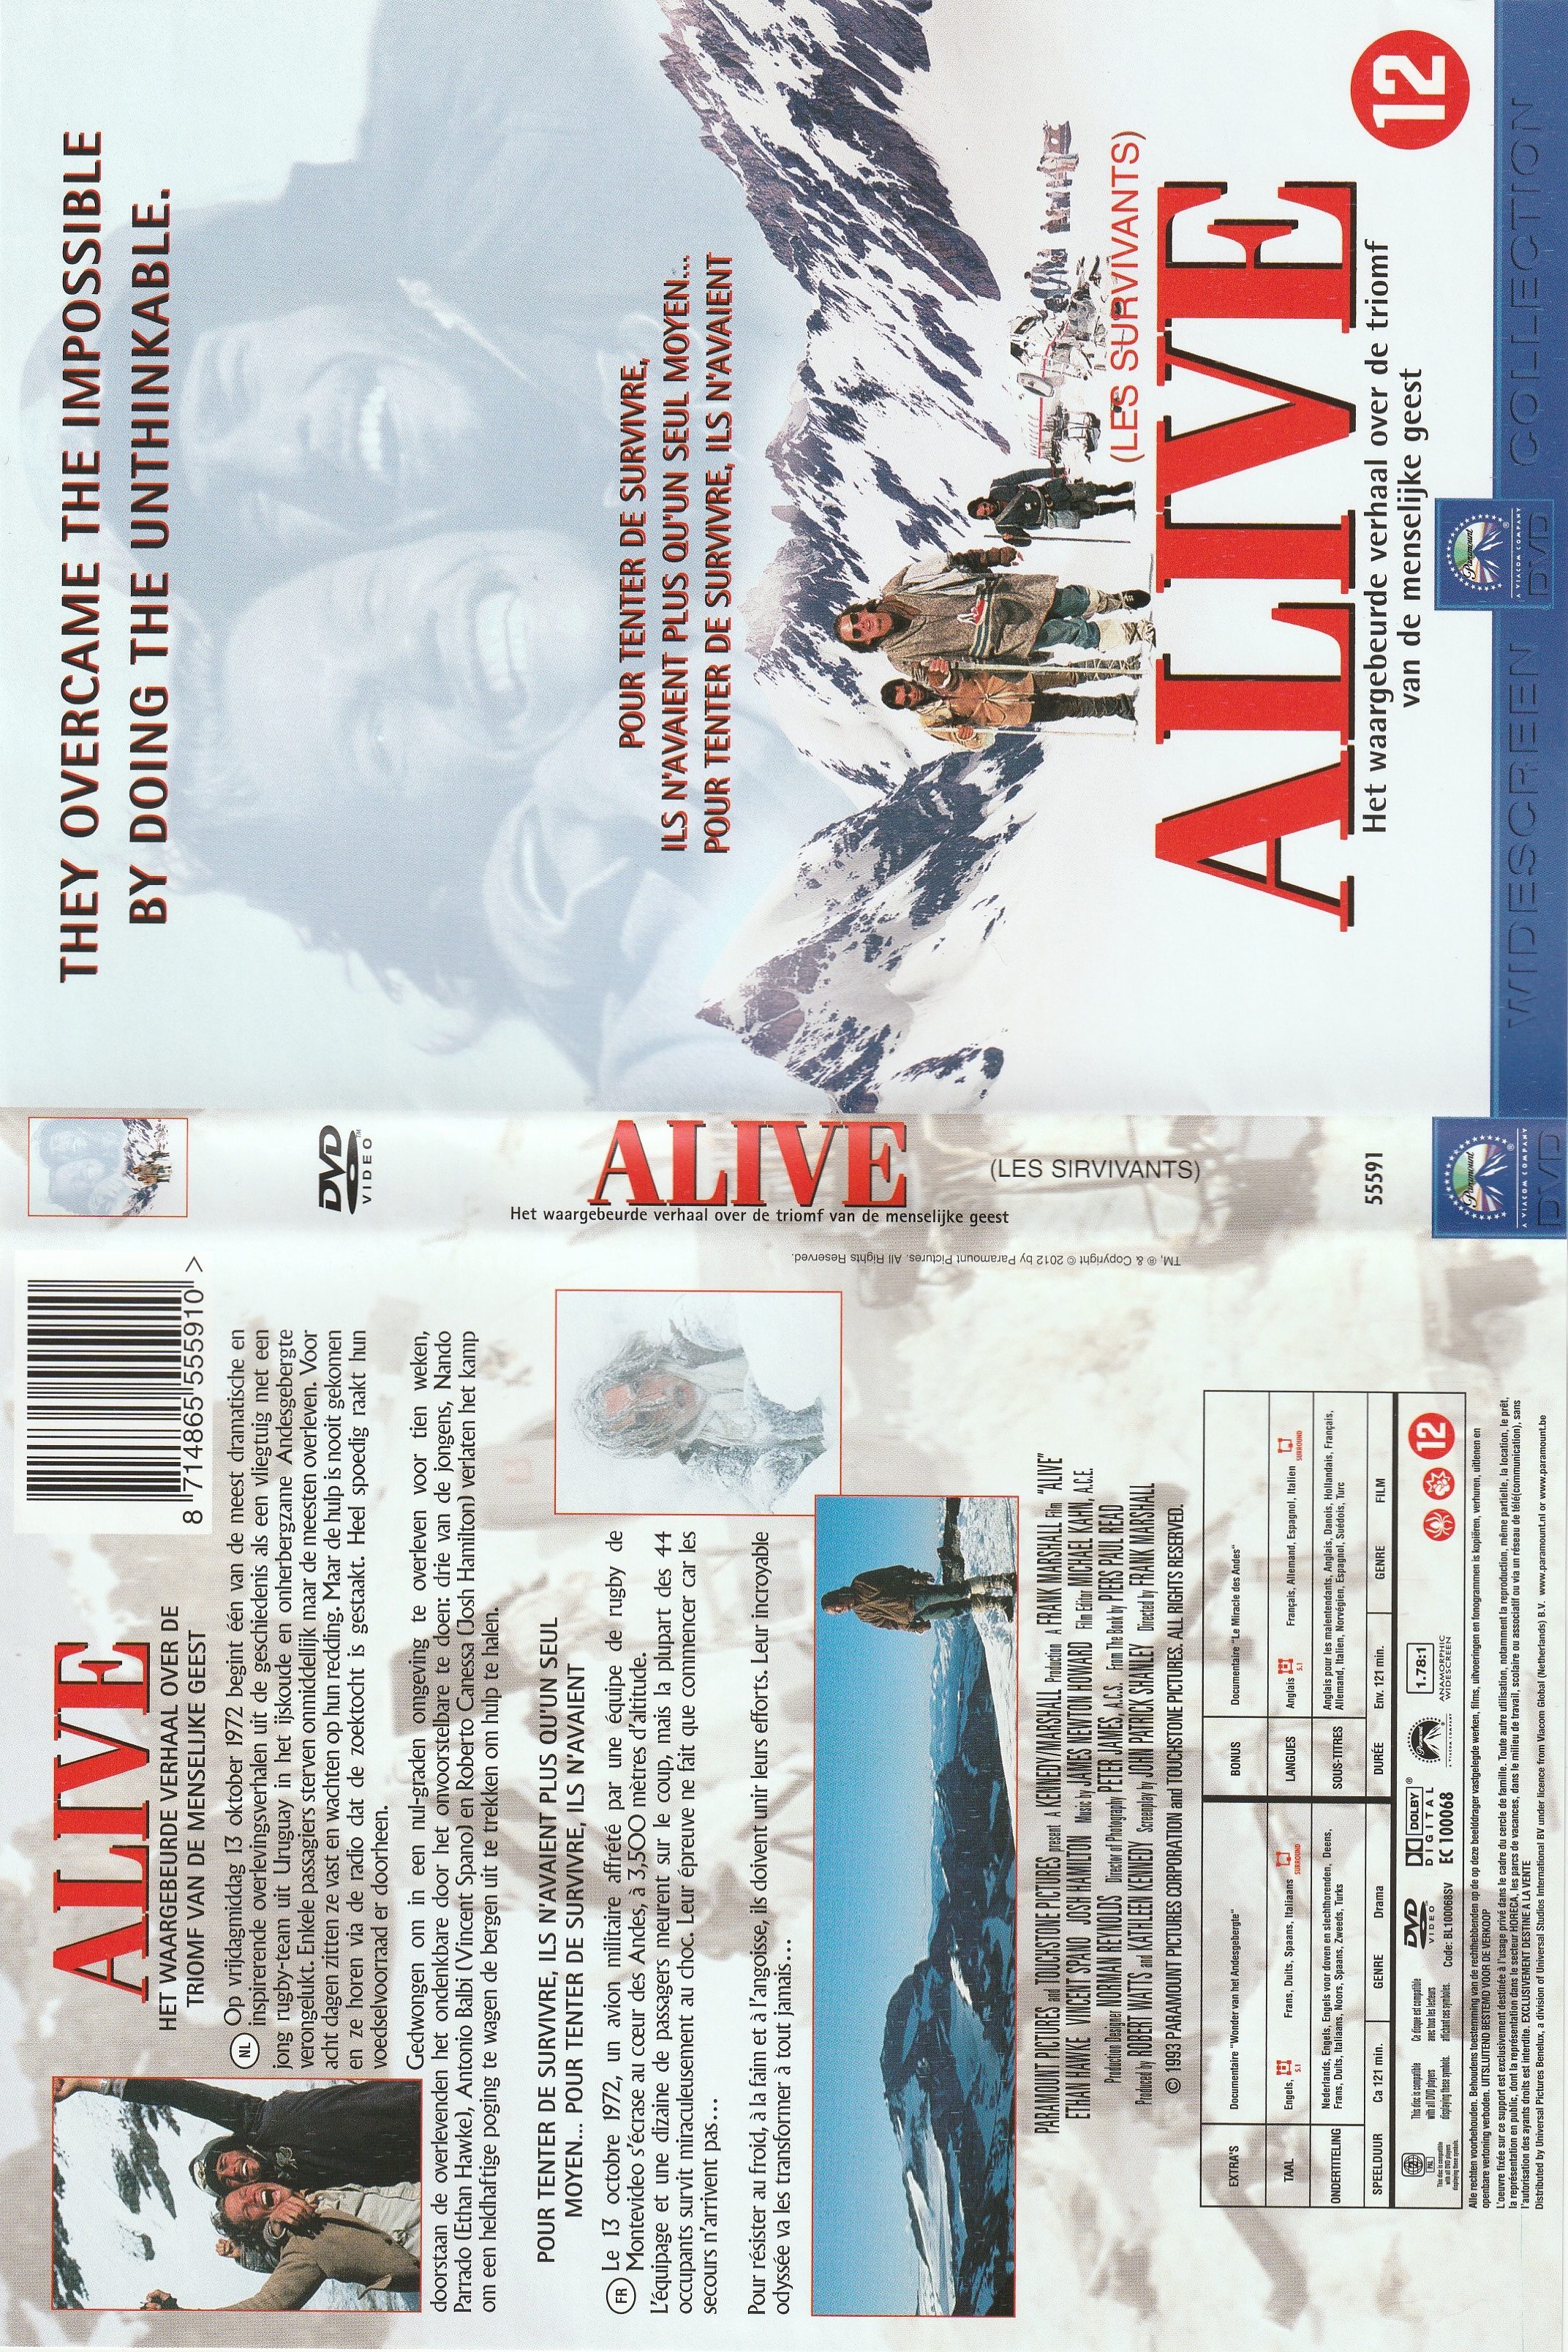 Jaquette DVD Les survivants v2